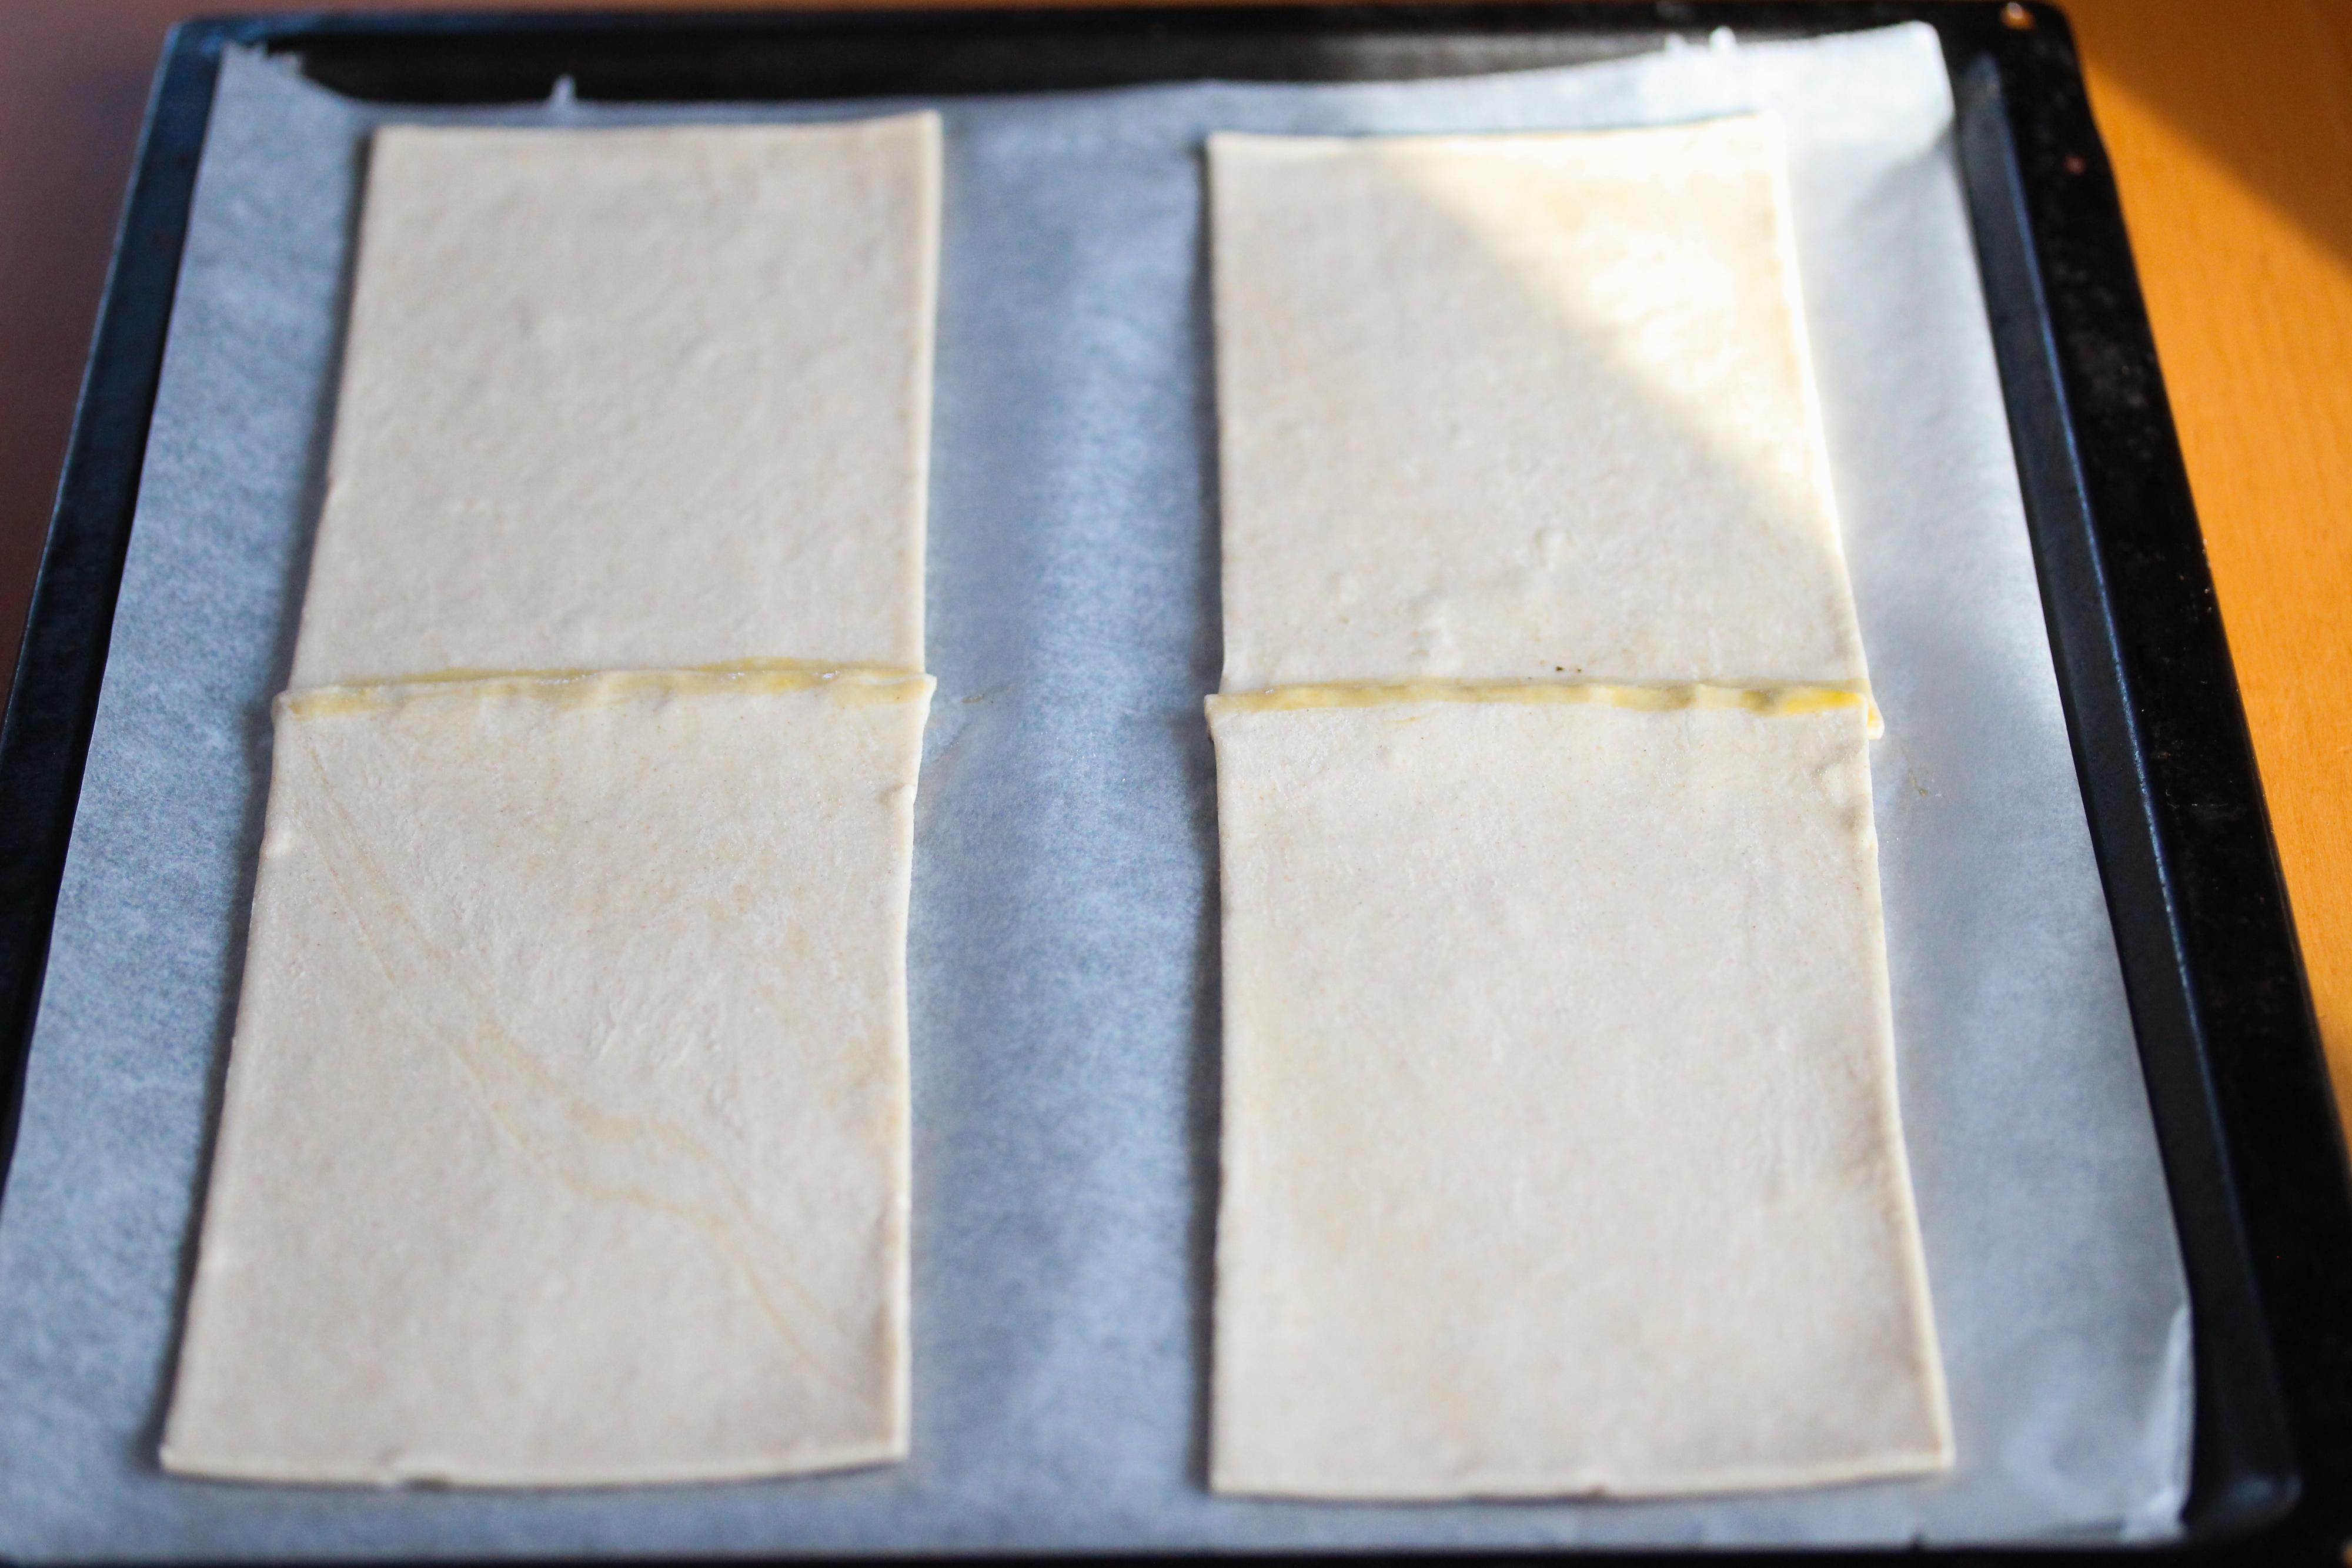 Finn frem en stekeplate og dekk den med bakepapir. Legg butterdeigsplatene etter hverandre to og to, lett overlappende, slik at du får to lengder. Pensle med litt egg i skjøtene.